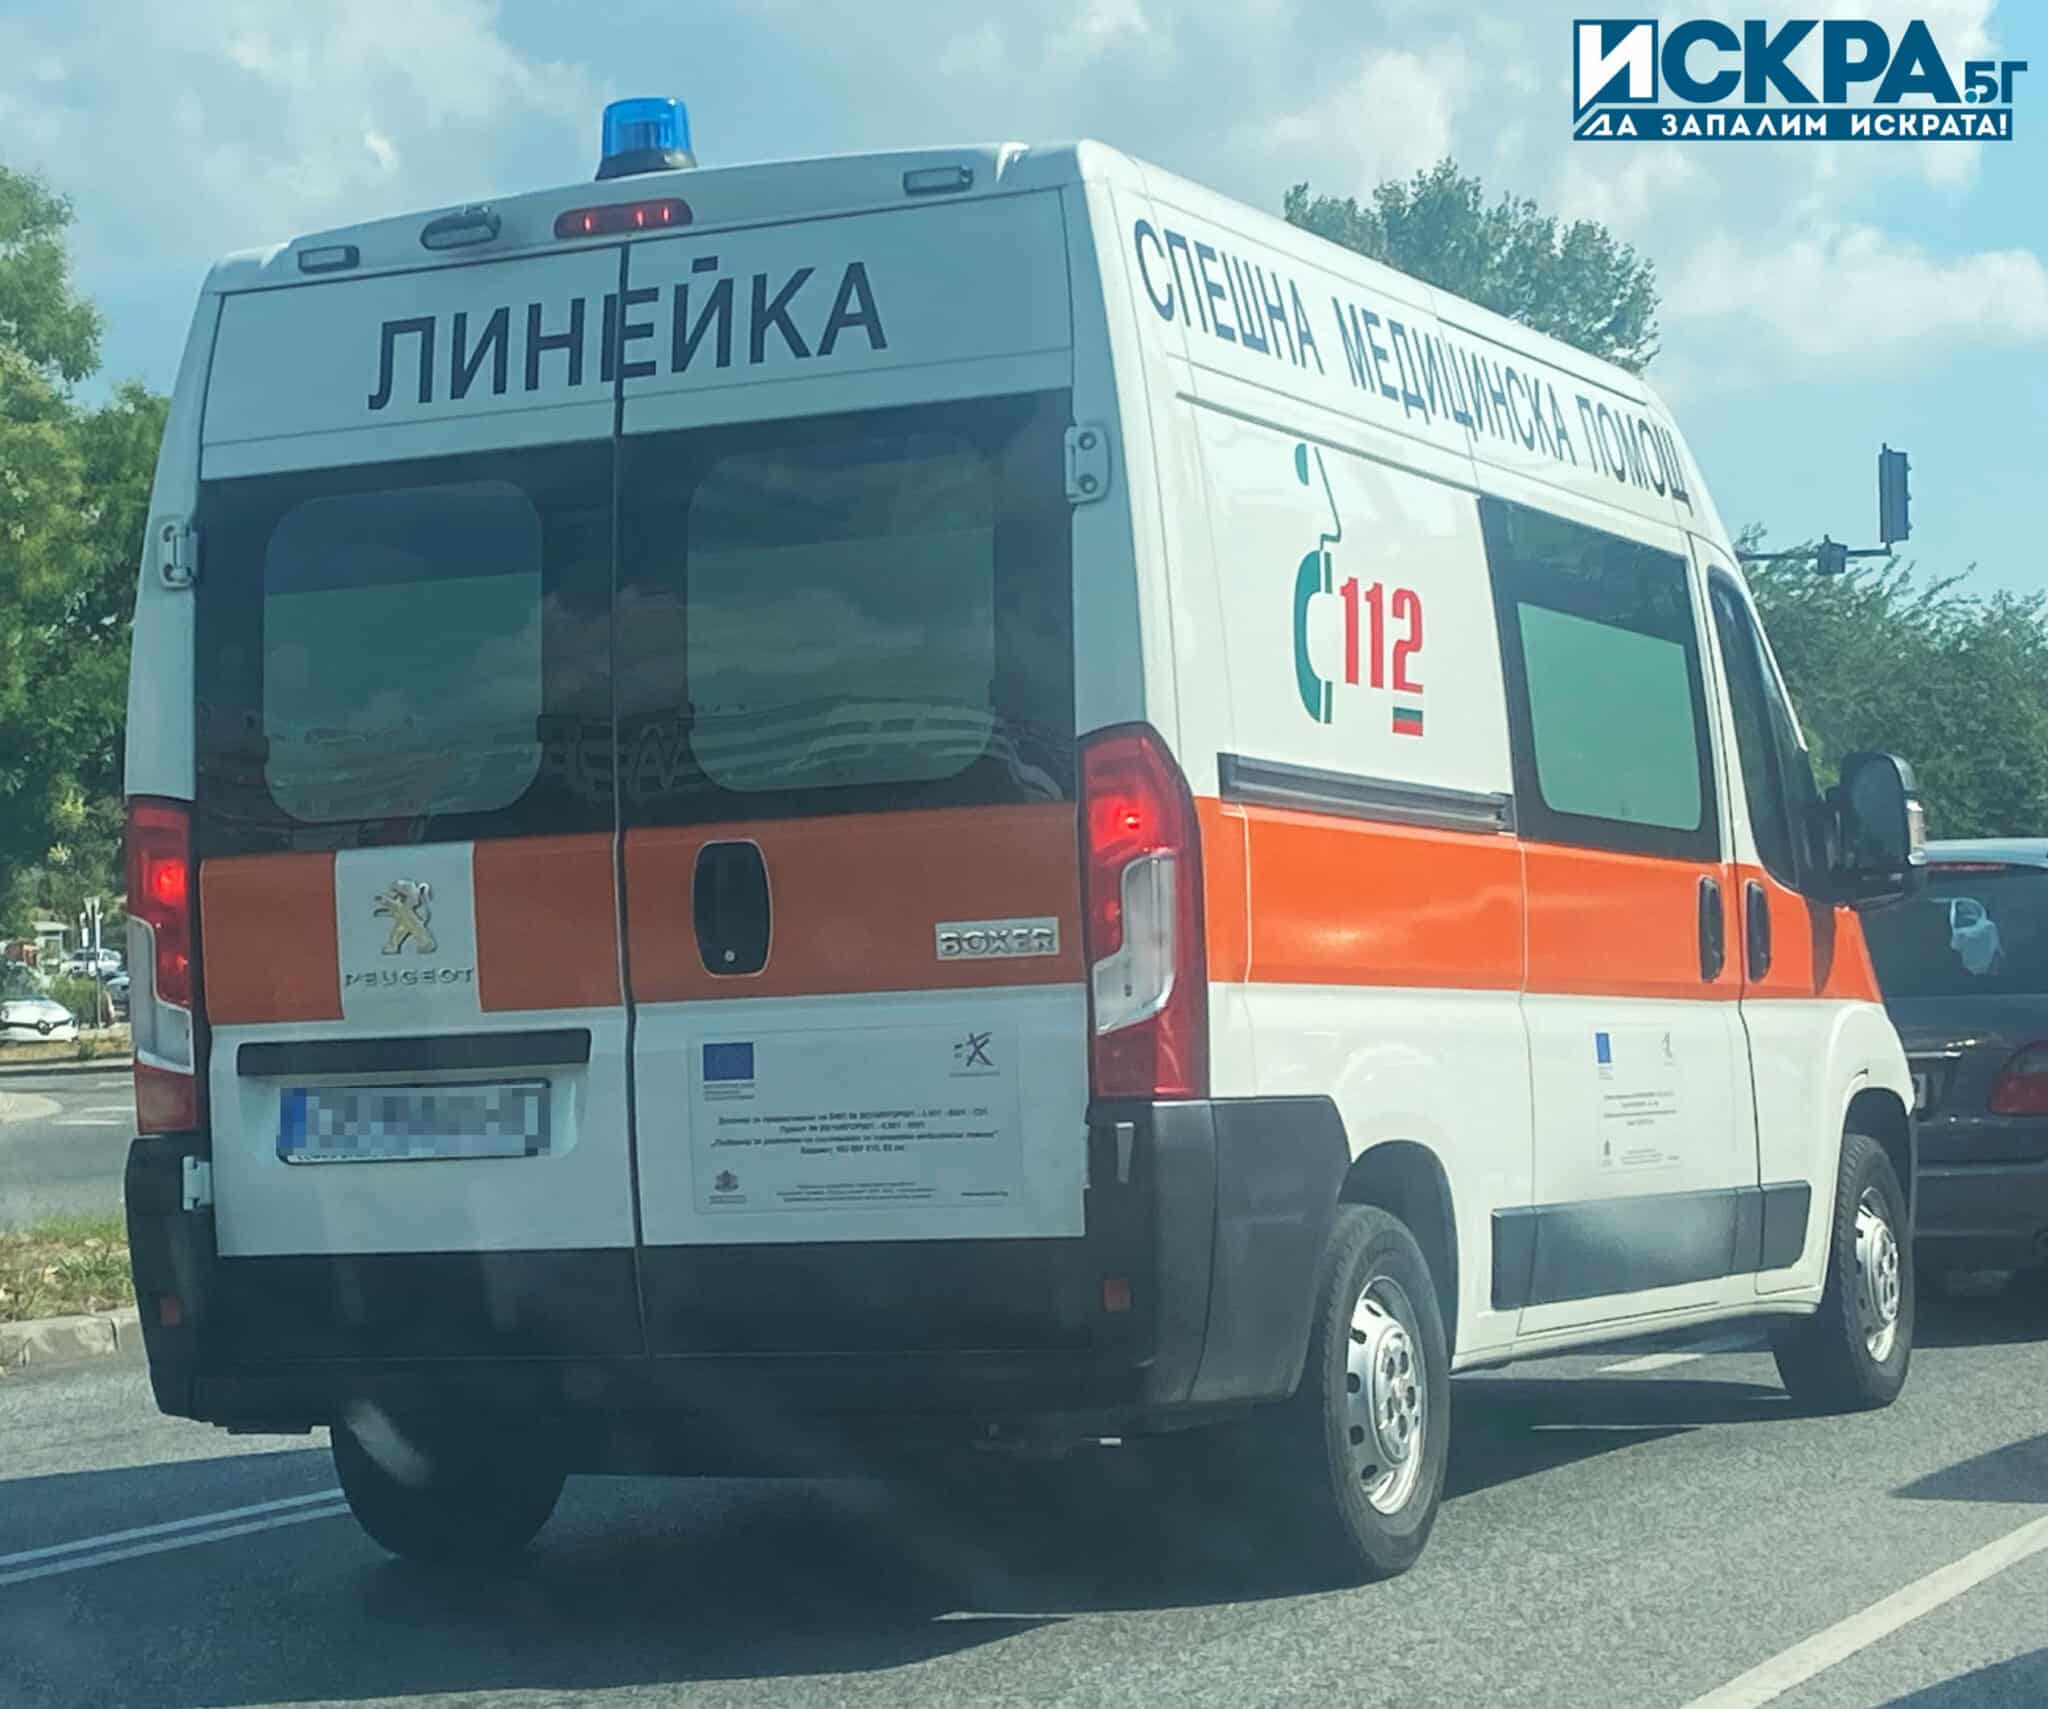 Жена е пострадала при пътнотранспортно произшествие, съобщиха от ОДМВР-София.
Около 10:40